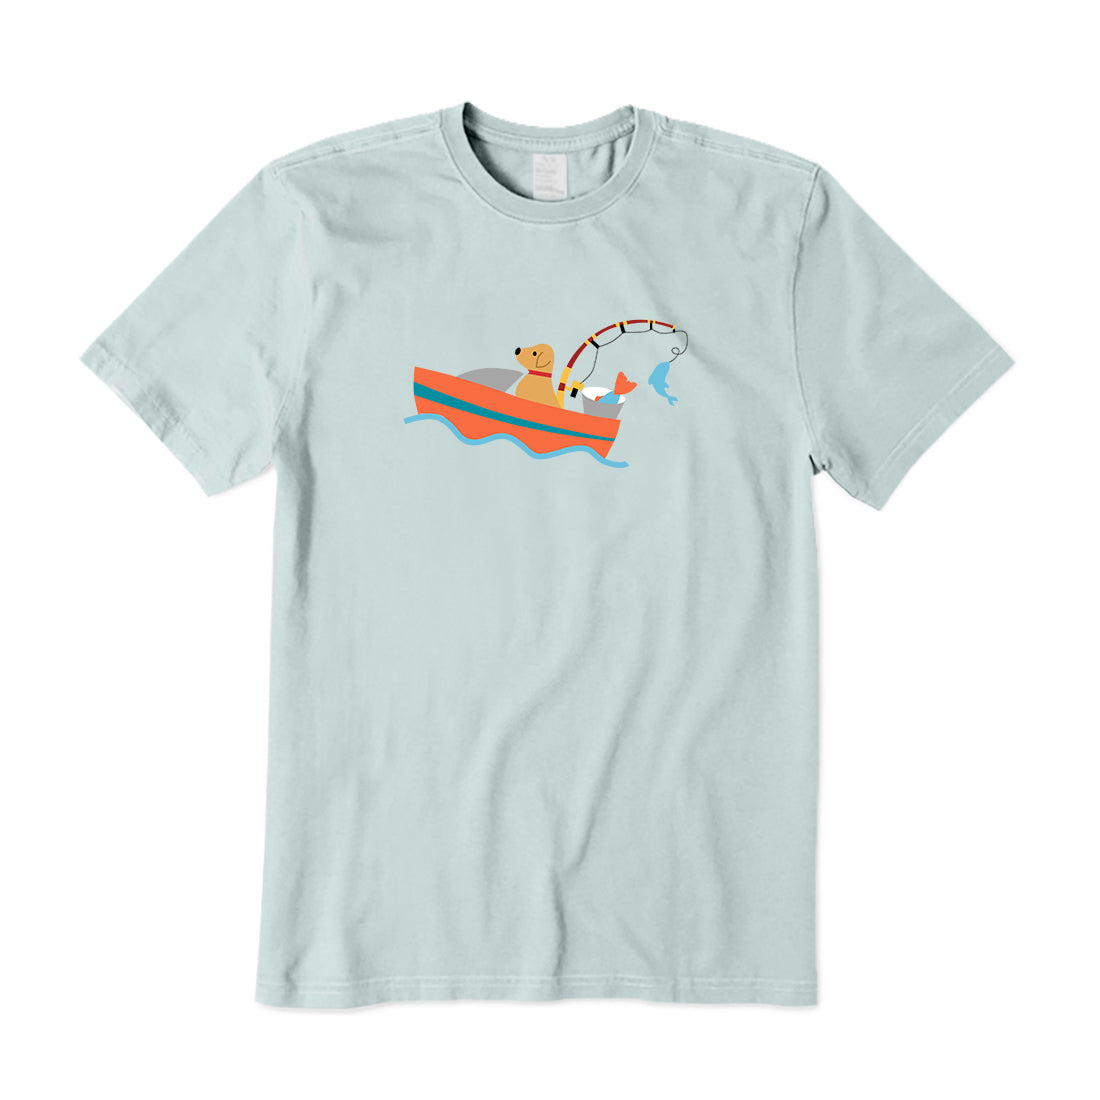 Fishing Dog On Boat T-Shirt